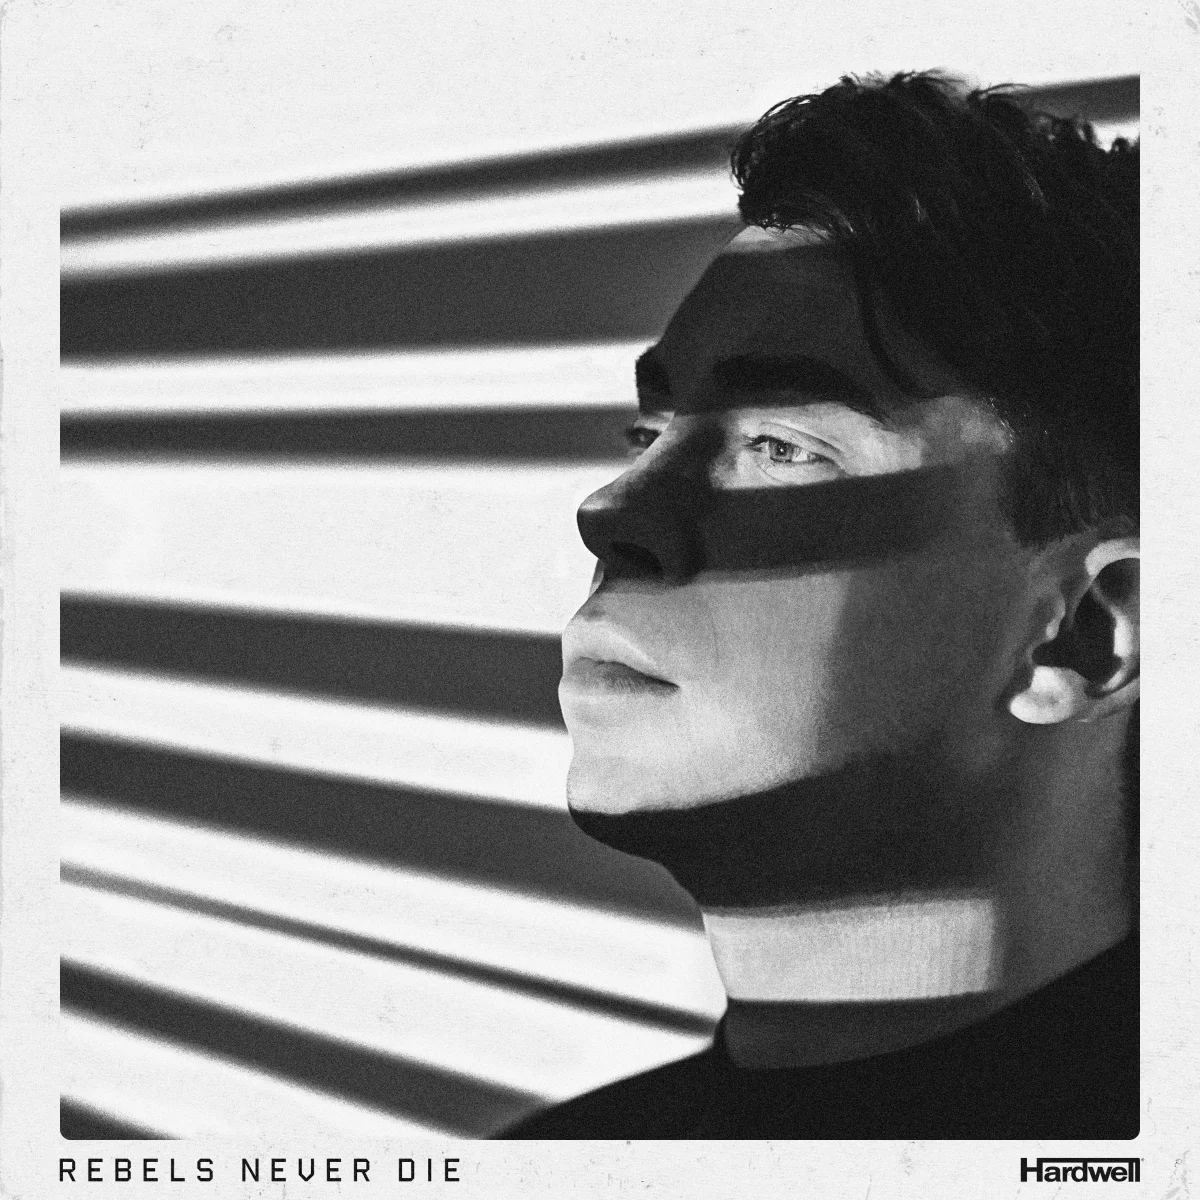 REBELS NEVER DIE [ALBUM] - Hardwell⁠ 